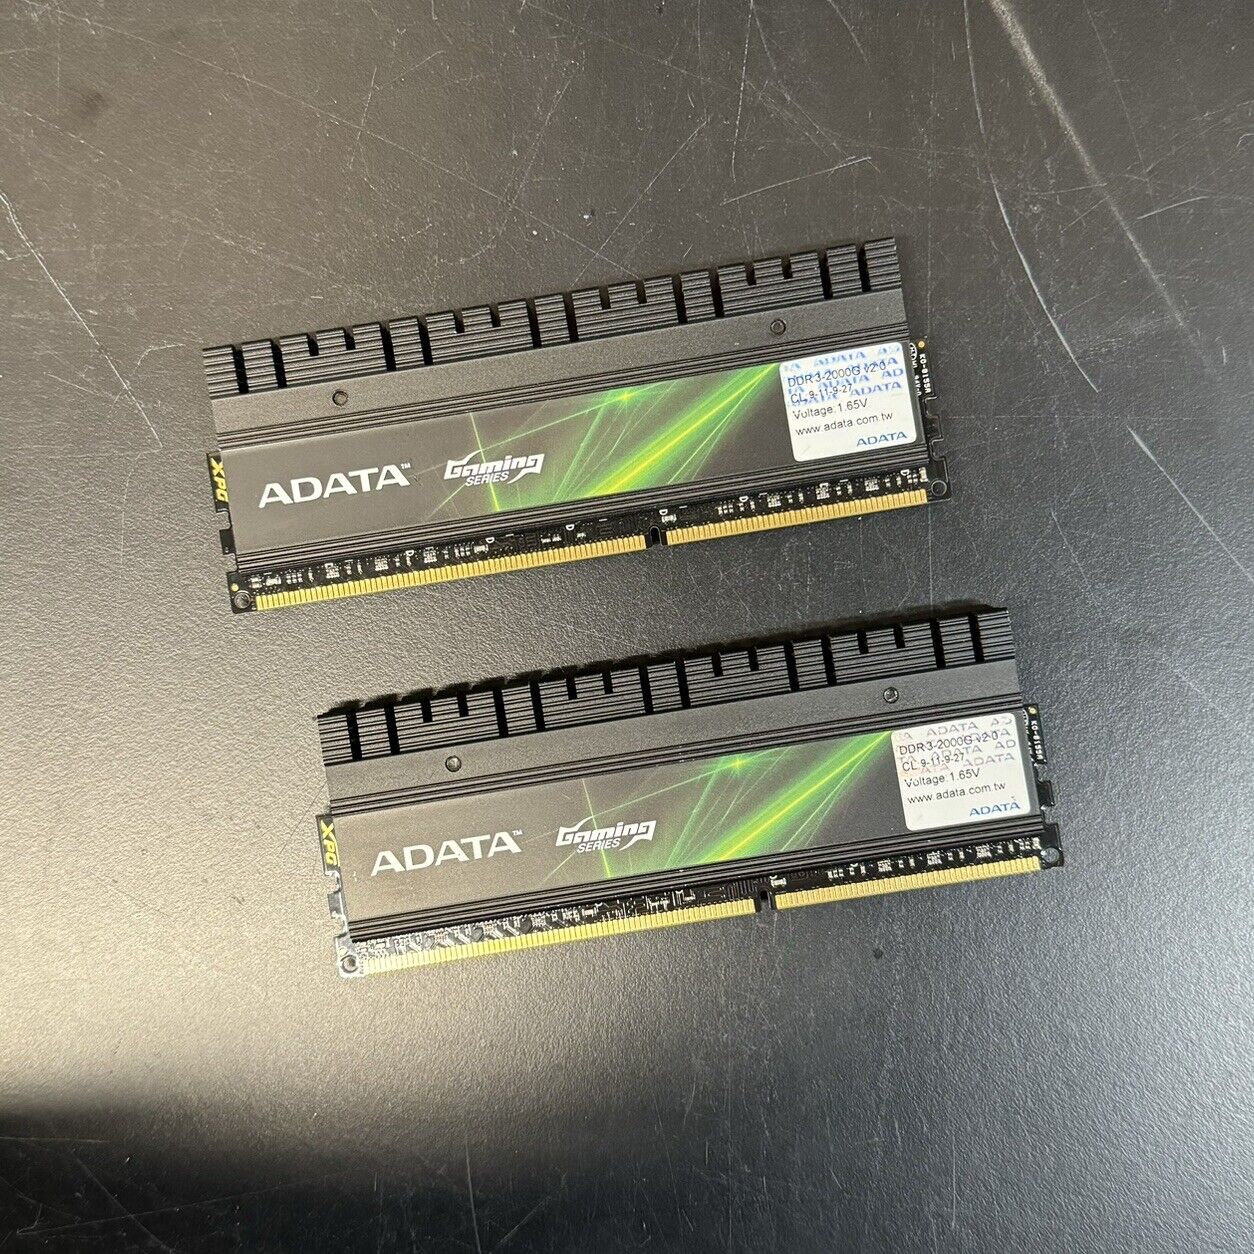 ADATA XPG Gaming v2.0 8GB (2 x 4GB) DDR3-2000 Desktop Memory CL9